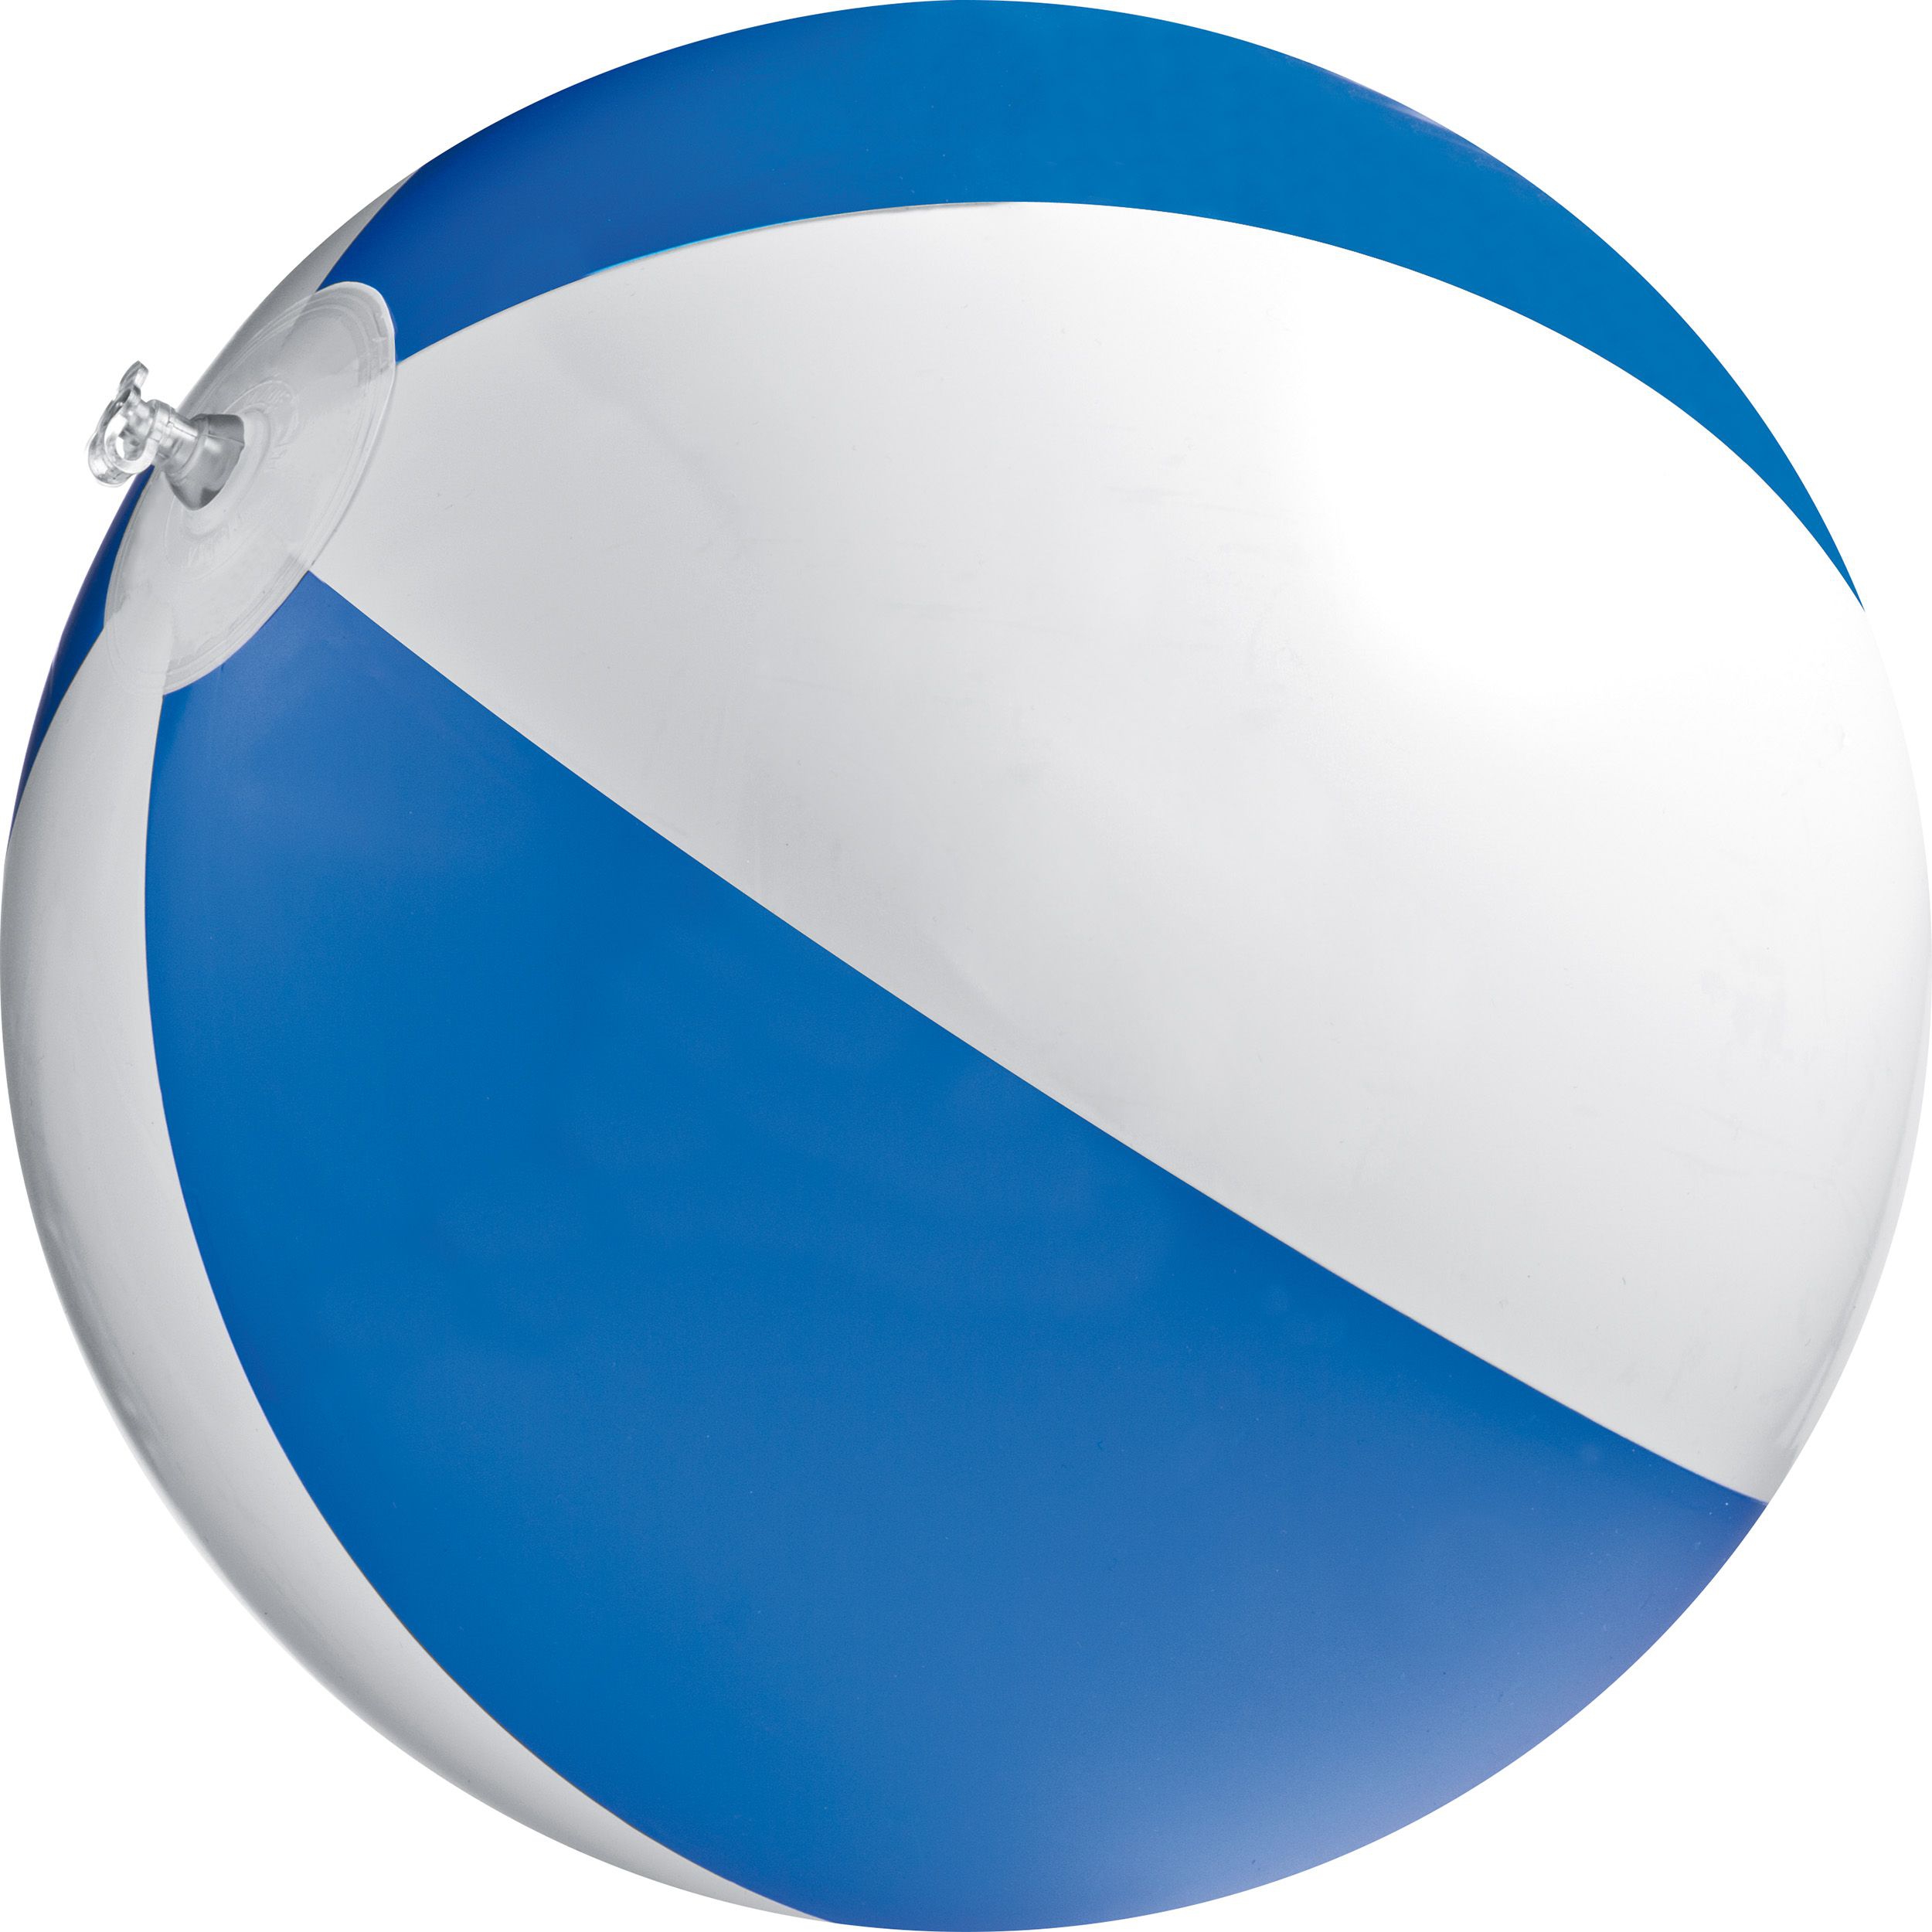 Strandball aus PVC mit einer Segmentlänge von 40 cm, blau